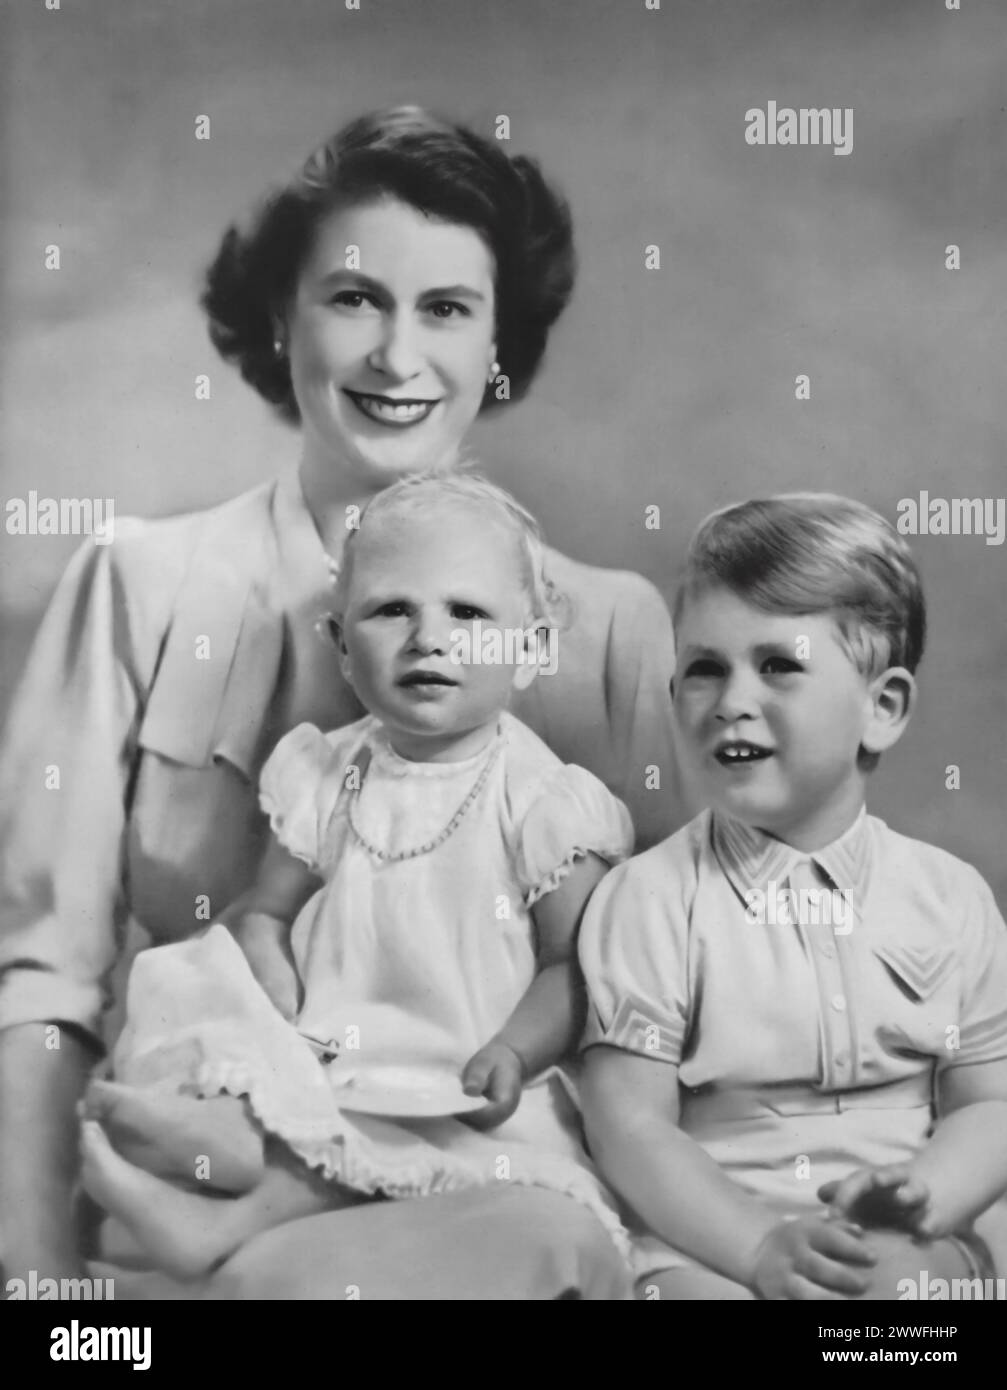 Elisabetta II è raffigurata con i suoi primi due figli, Carlo III e la principessa Anna, in una fotografia scattata intorno al 1951. Questa immagine cattura un momento nella vita della famiglia reale prima della sua ascesa al trono, mostrando i primi anni del futuro monarca e di sua sorella. Foto Stock